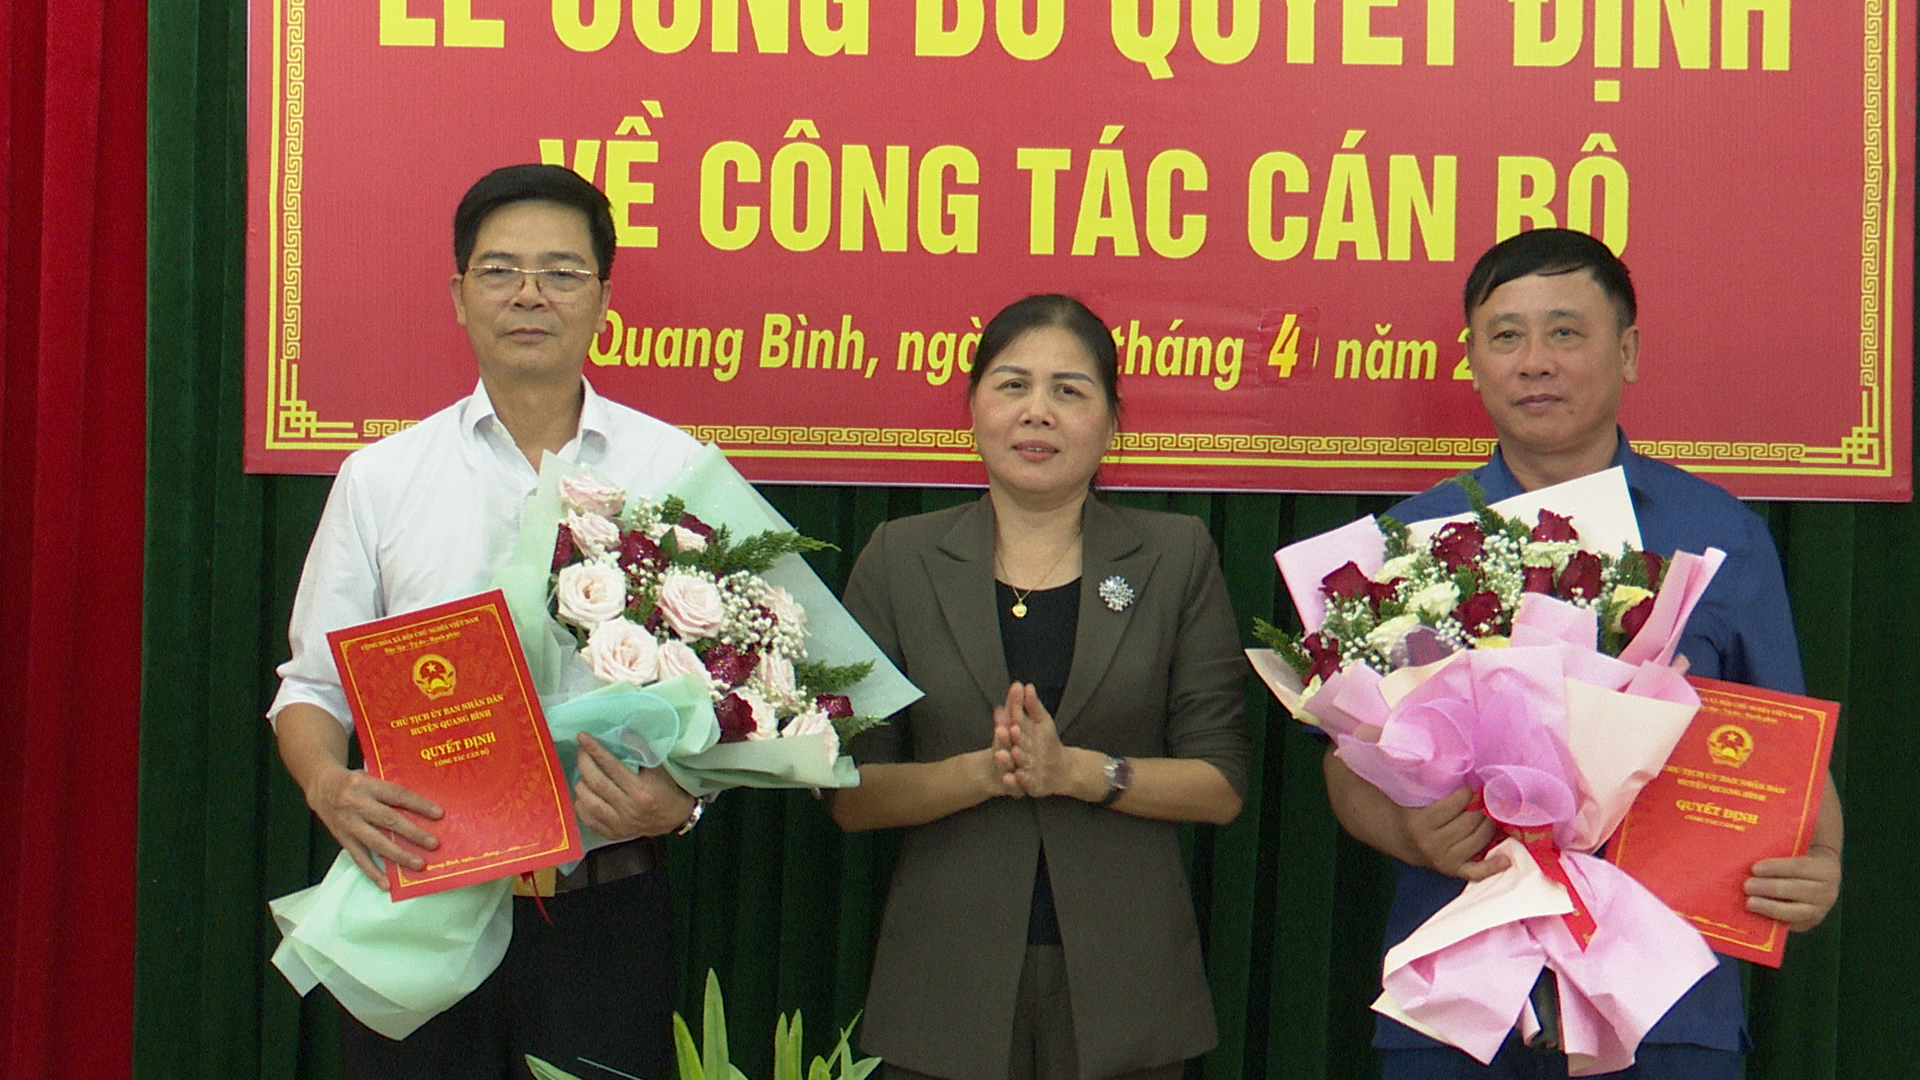 UBND huyện Quang Bình công bố Quyết định về công tác cán bộ